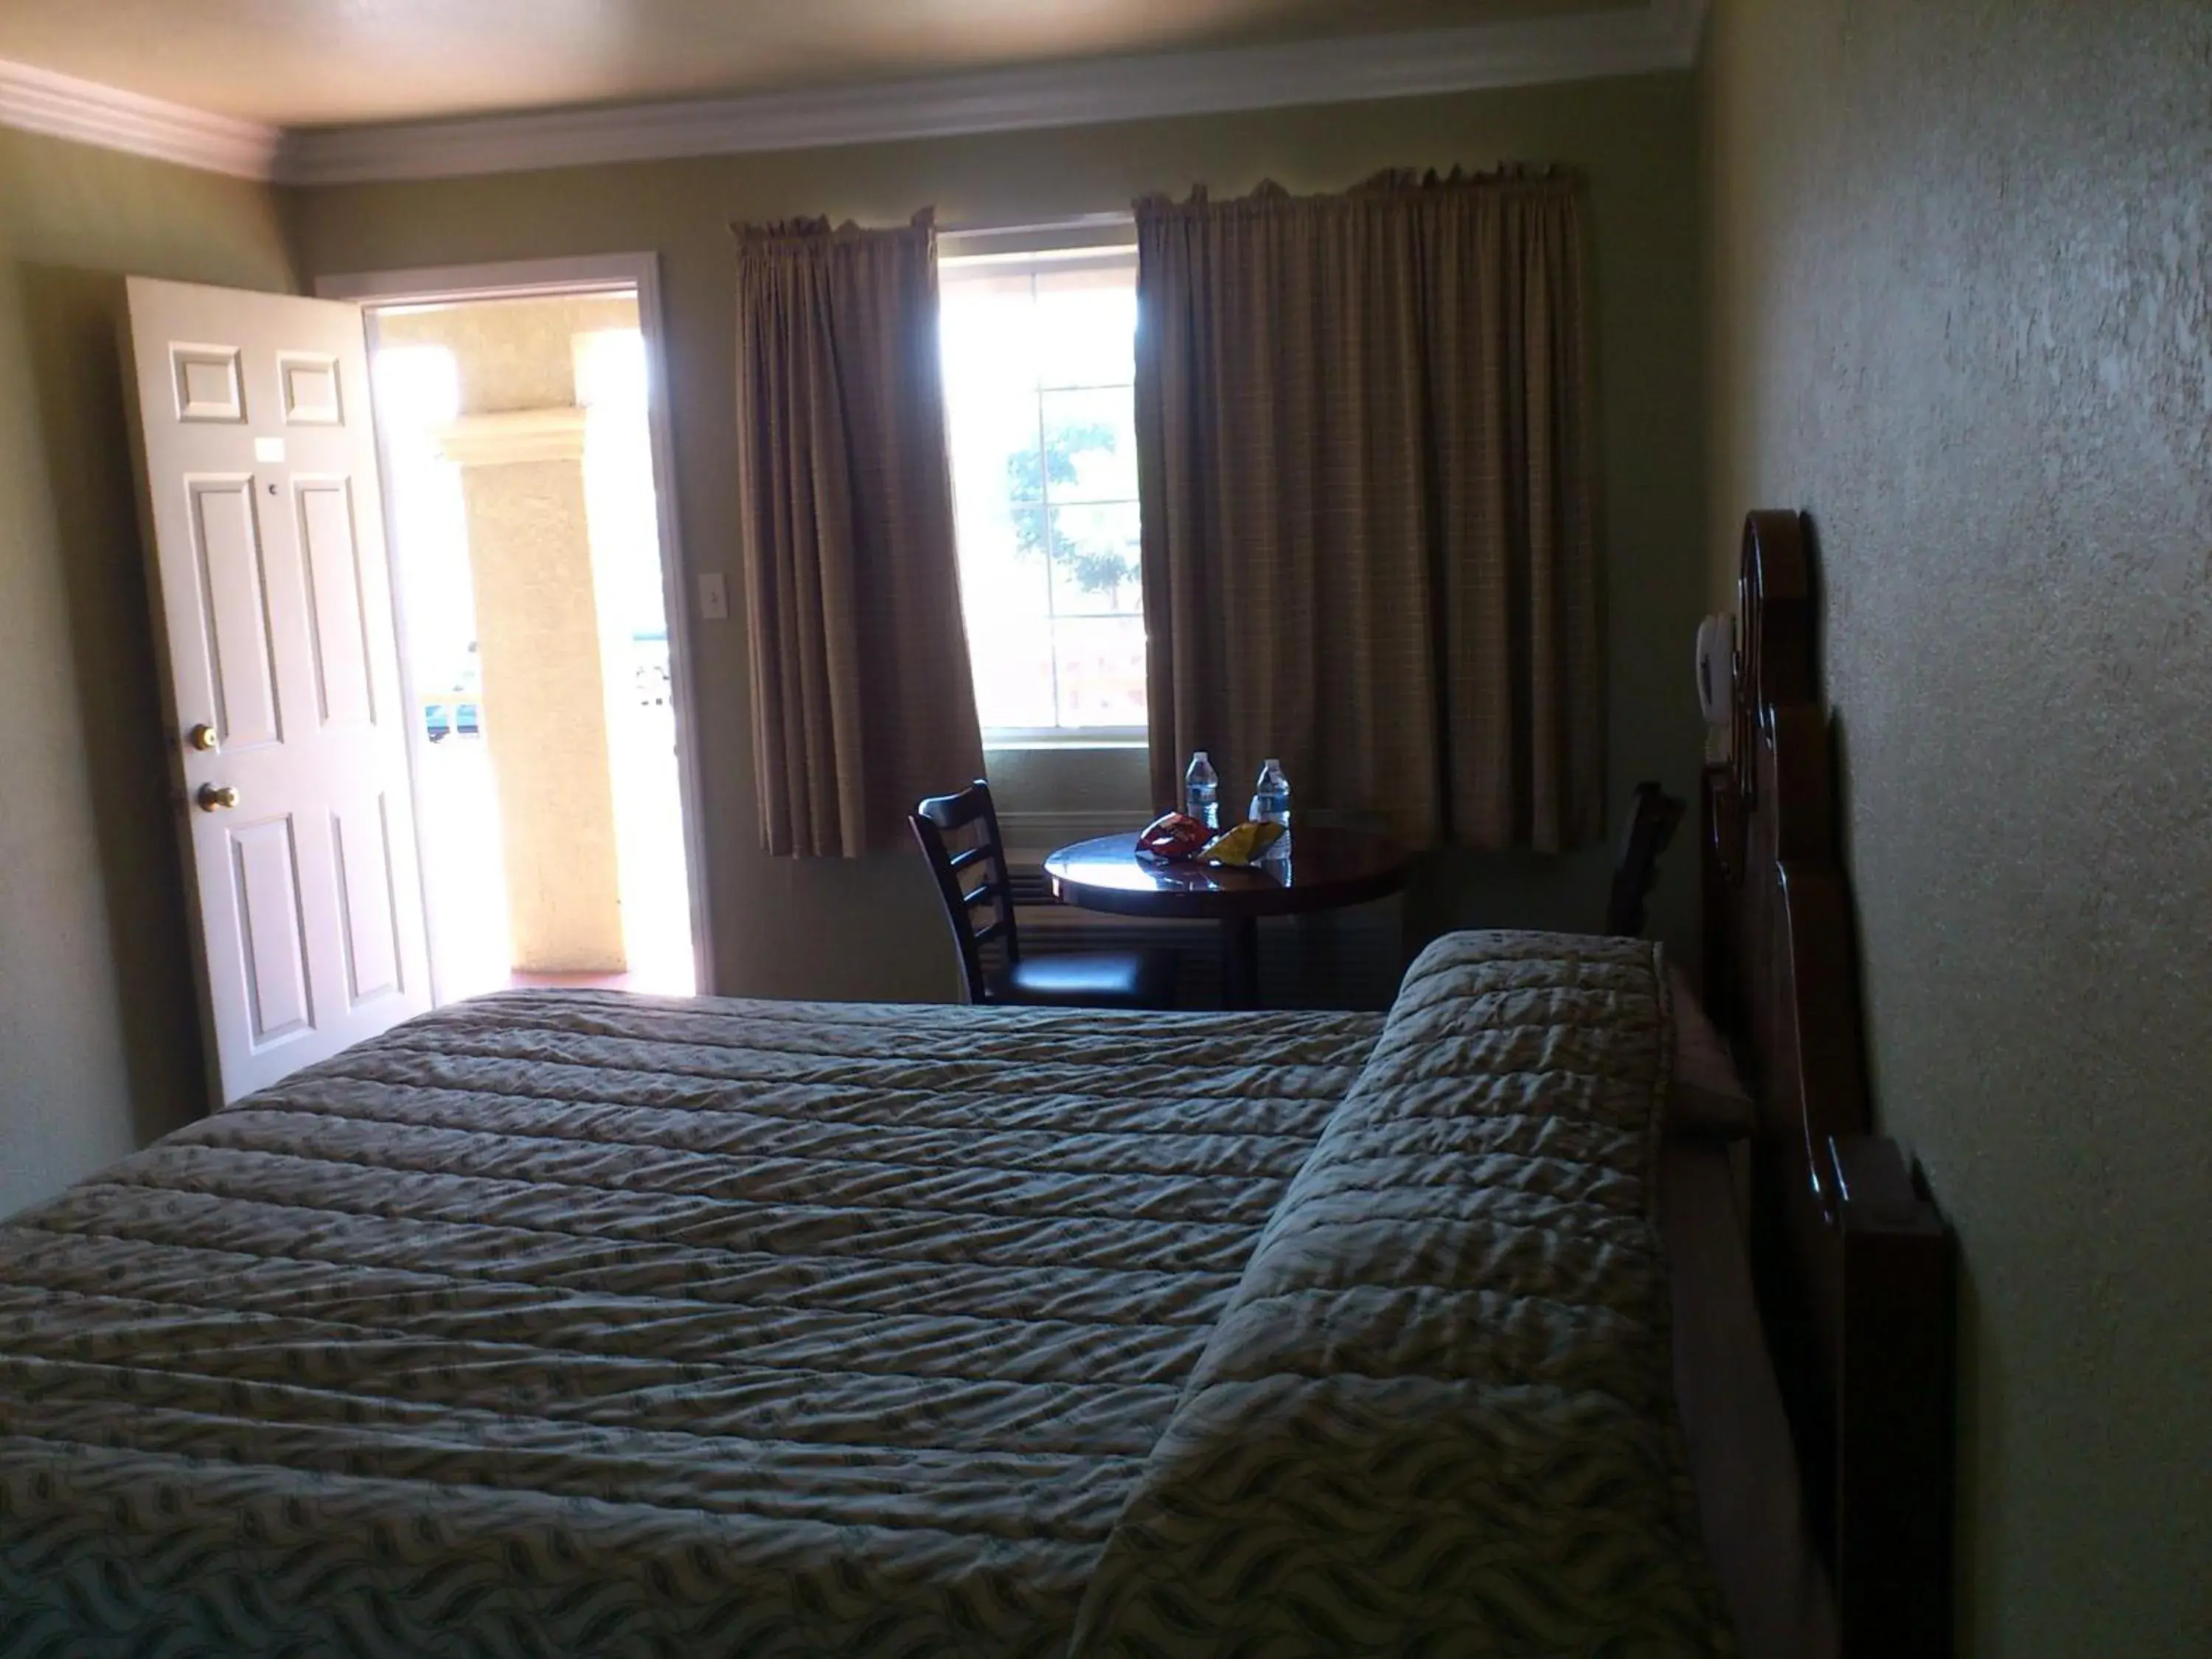 Bed in Santa Ana Travel Inn